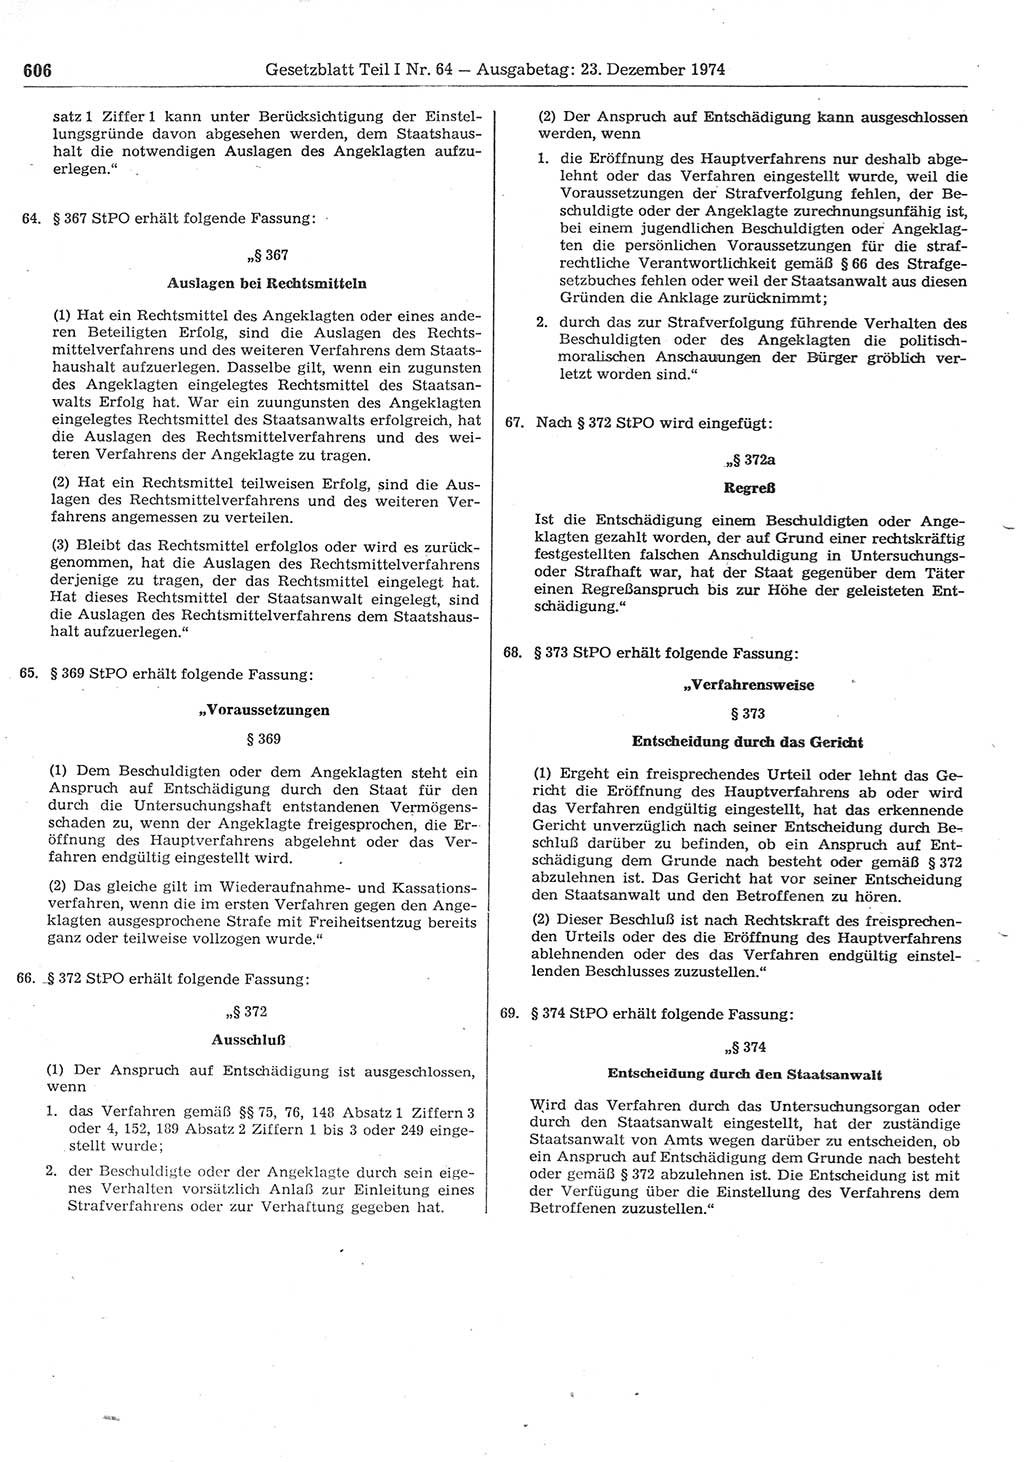 Gesetzblatt (GBl.) der Deutschen Demokratischen Republik (DDR) Teil Ⅰ 1974, Seite 606 (GBl. DDR Ⅰ 1974, S. 606)